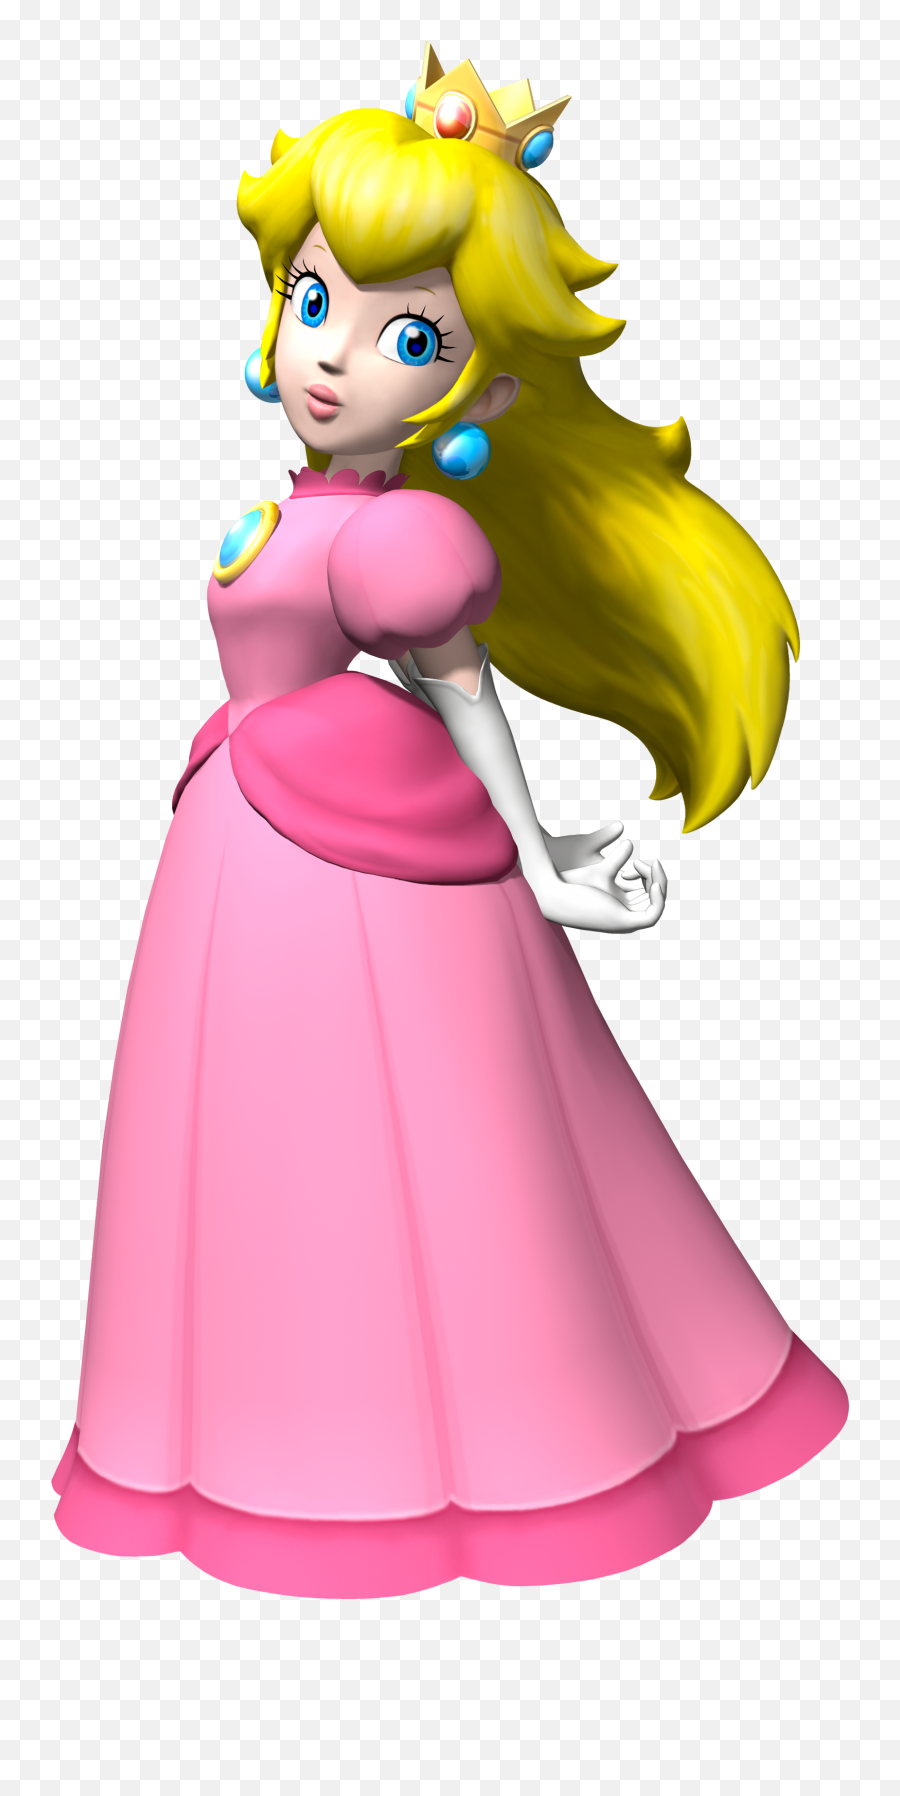 Princess Peach - Princess Peach Mario Kart Png,Princess Peach Transparent